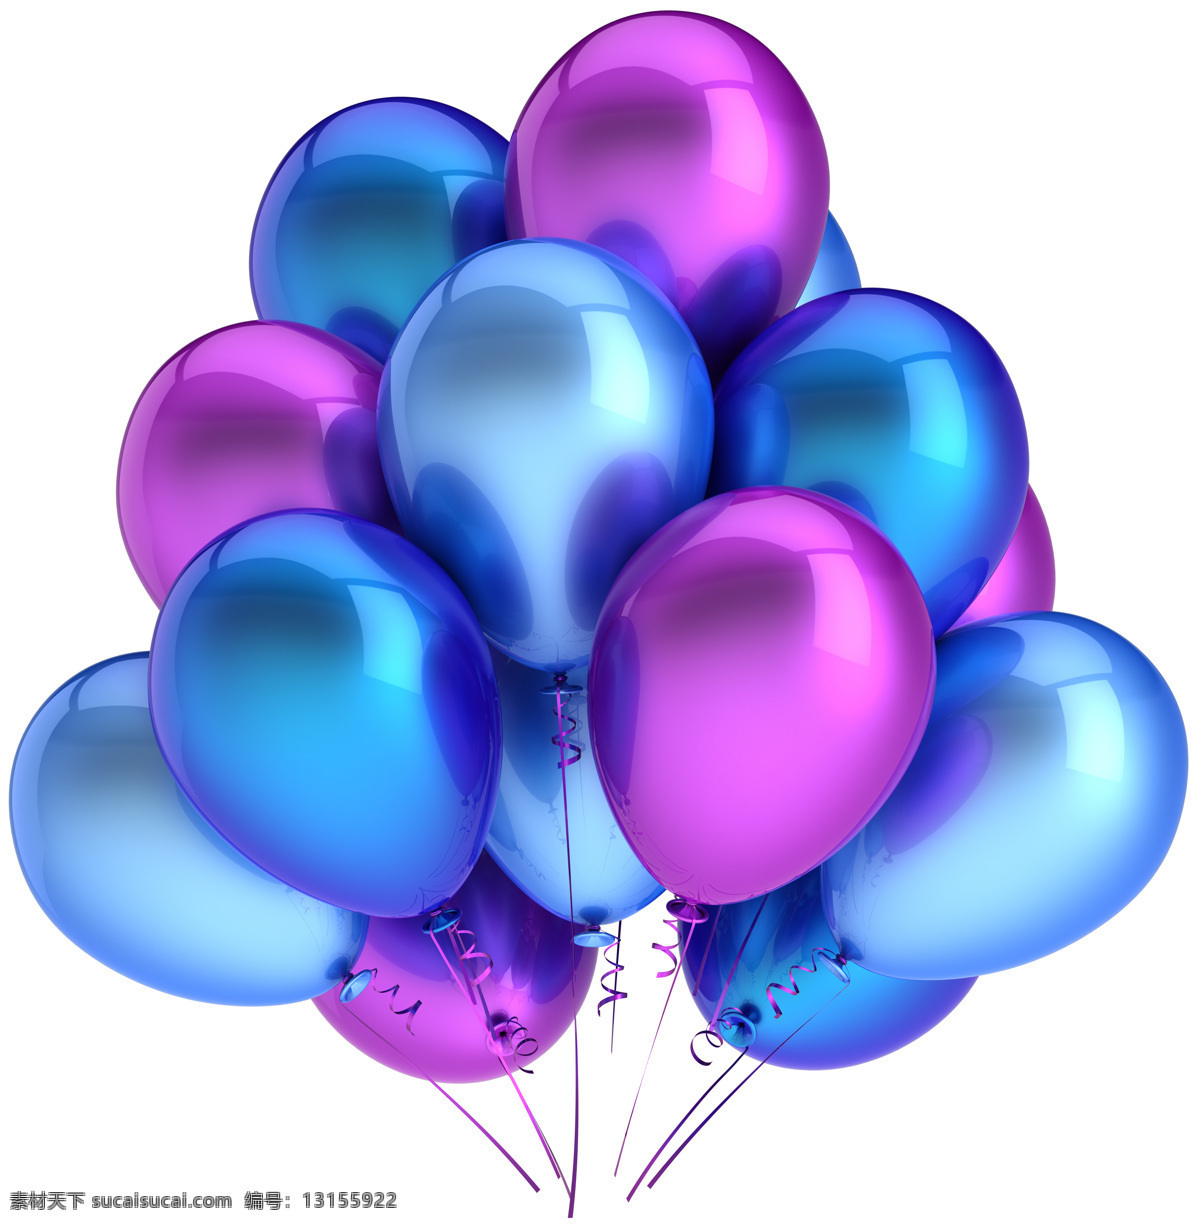 彩色 气球 彩色气球 喜庆素材 节日素材 其他类别 生活百科